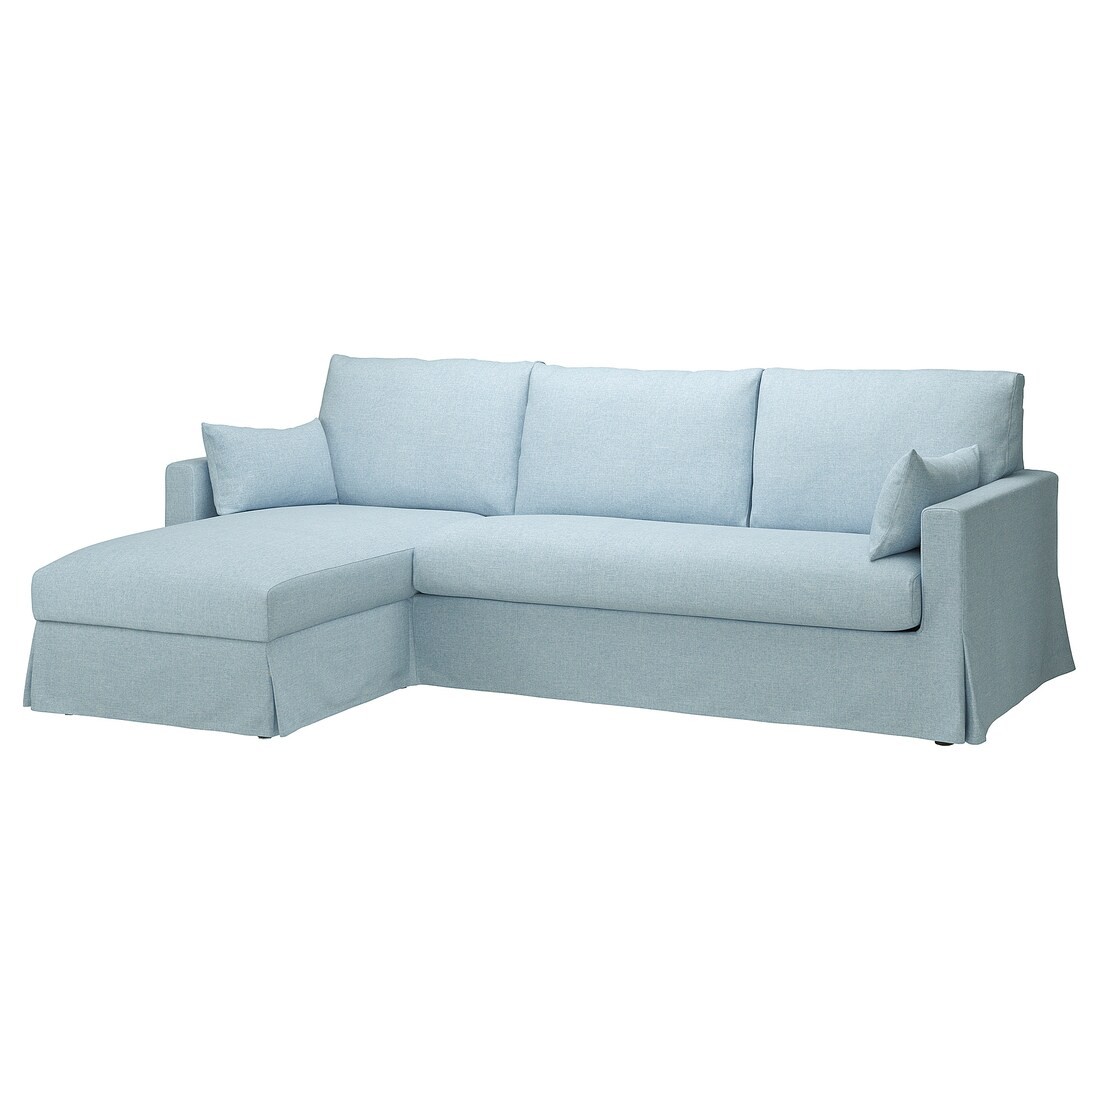 HYLTARP 3-місний диван з козеткою, зліва, Кіланда блідо-блакитна